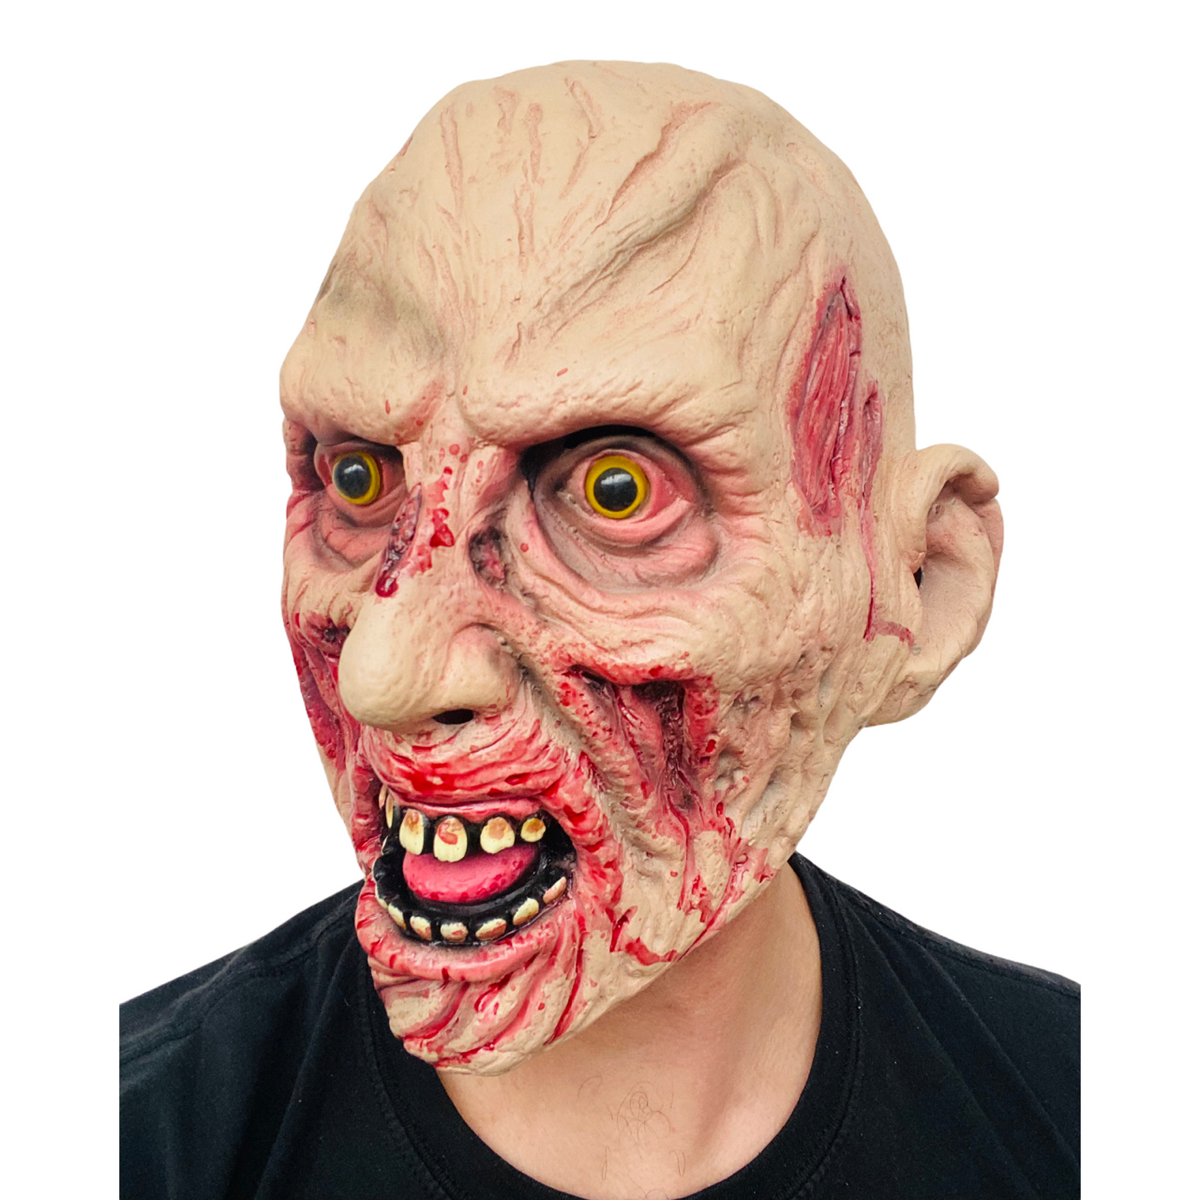 Masque de zombie.